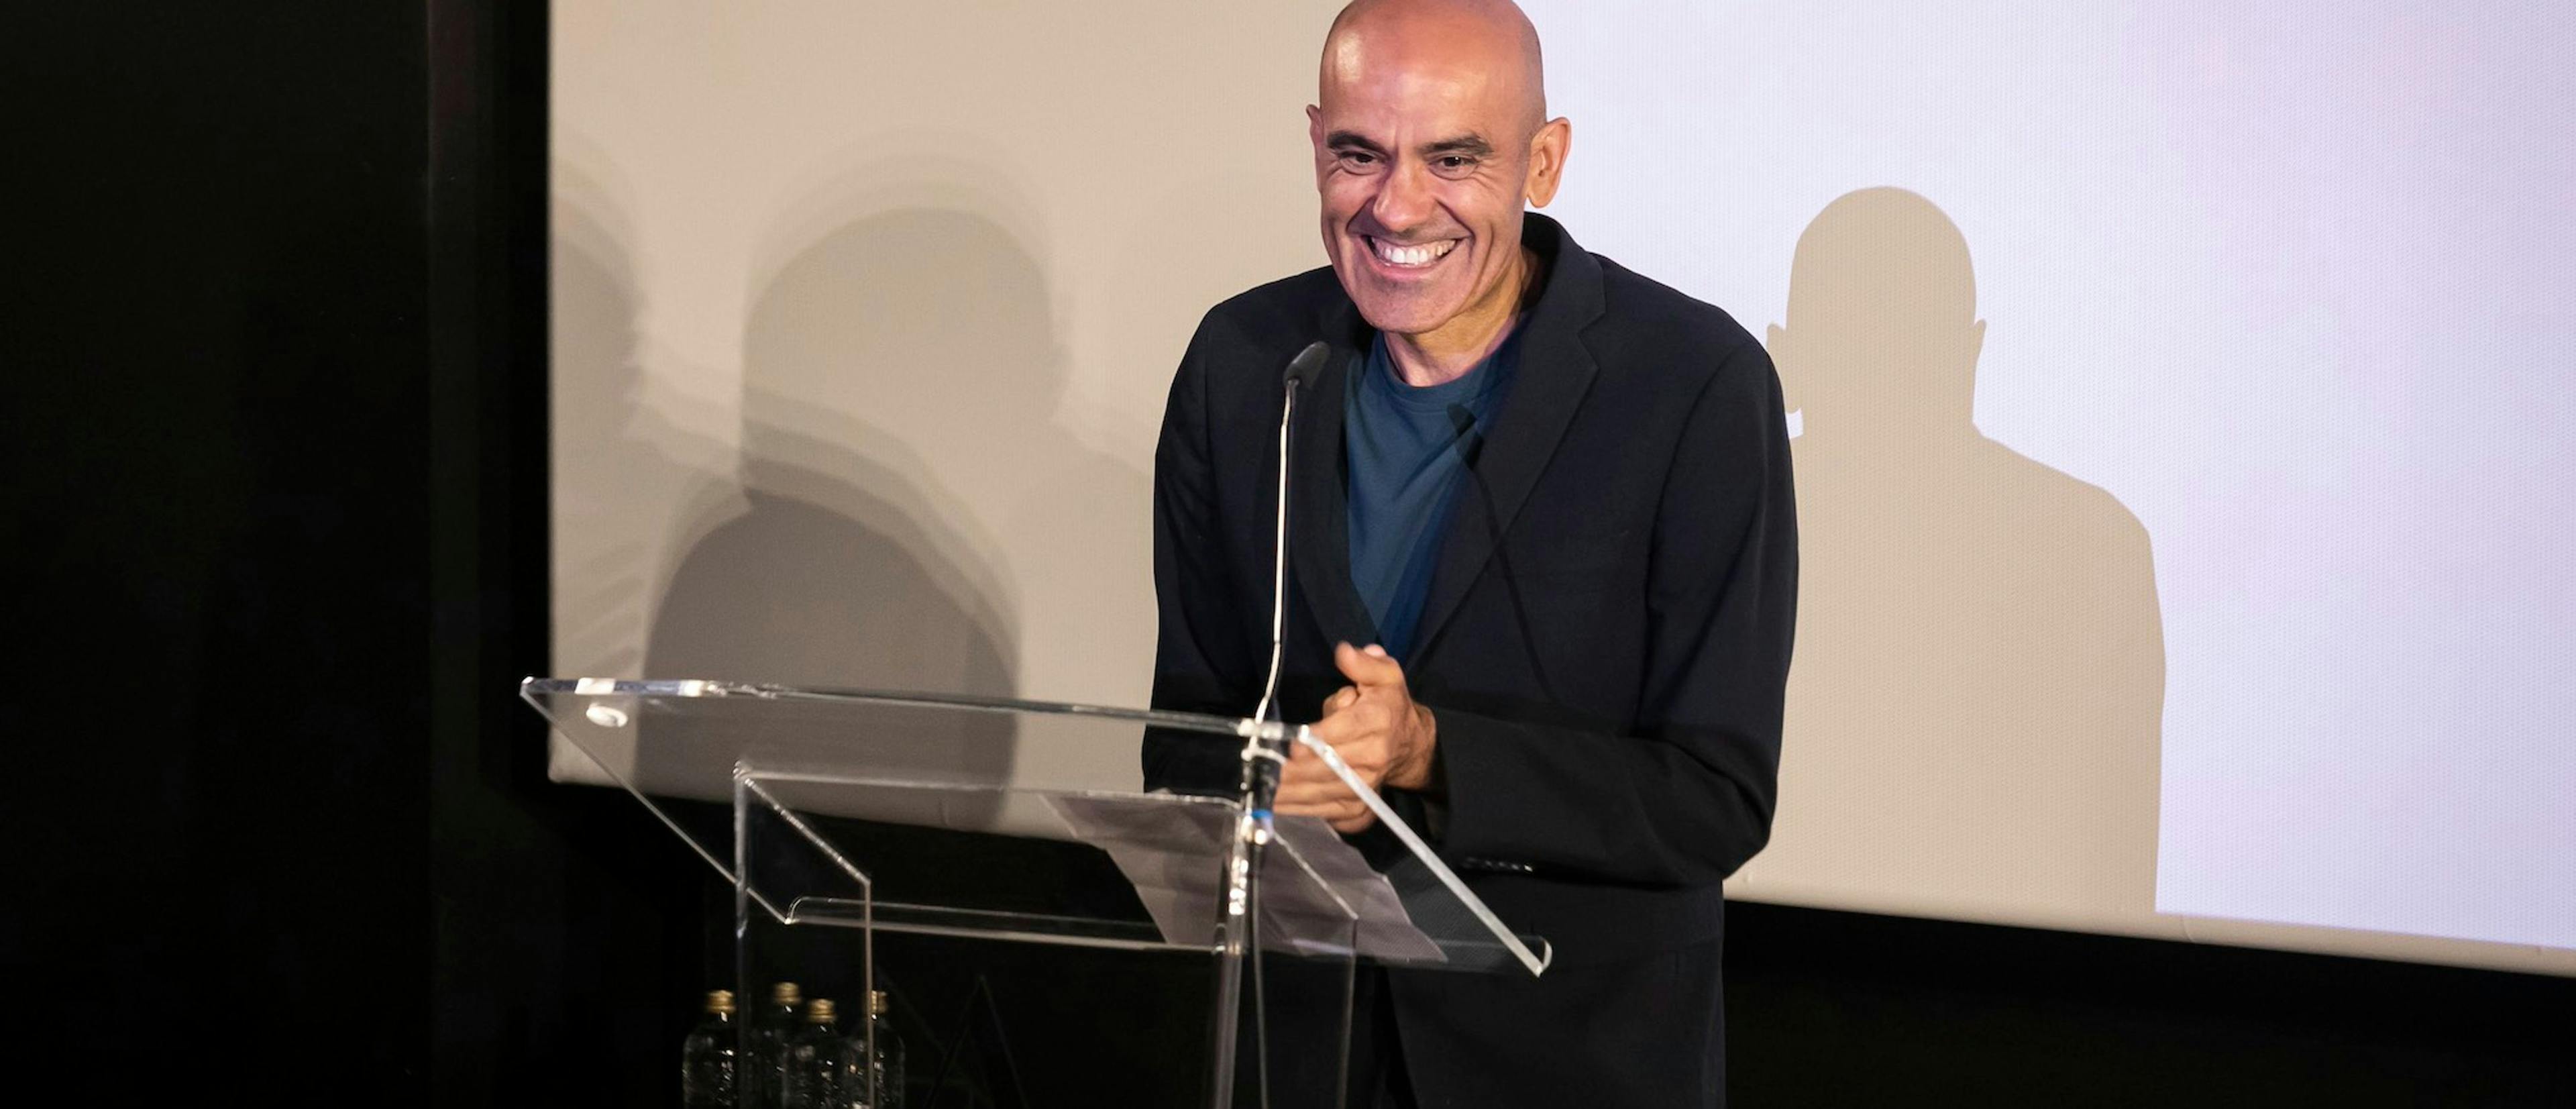 Rafael Portela, vicepresidente de la Academia de Cine, durante un evento en la sala de proyecciones de la organización